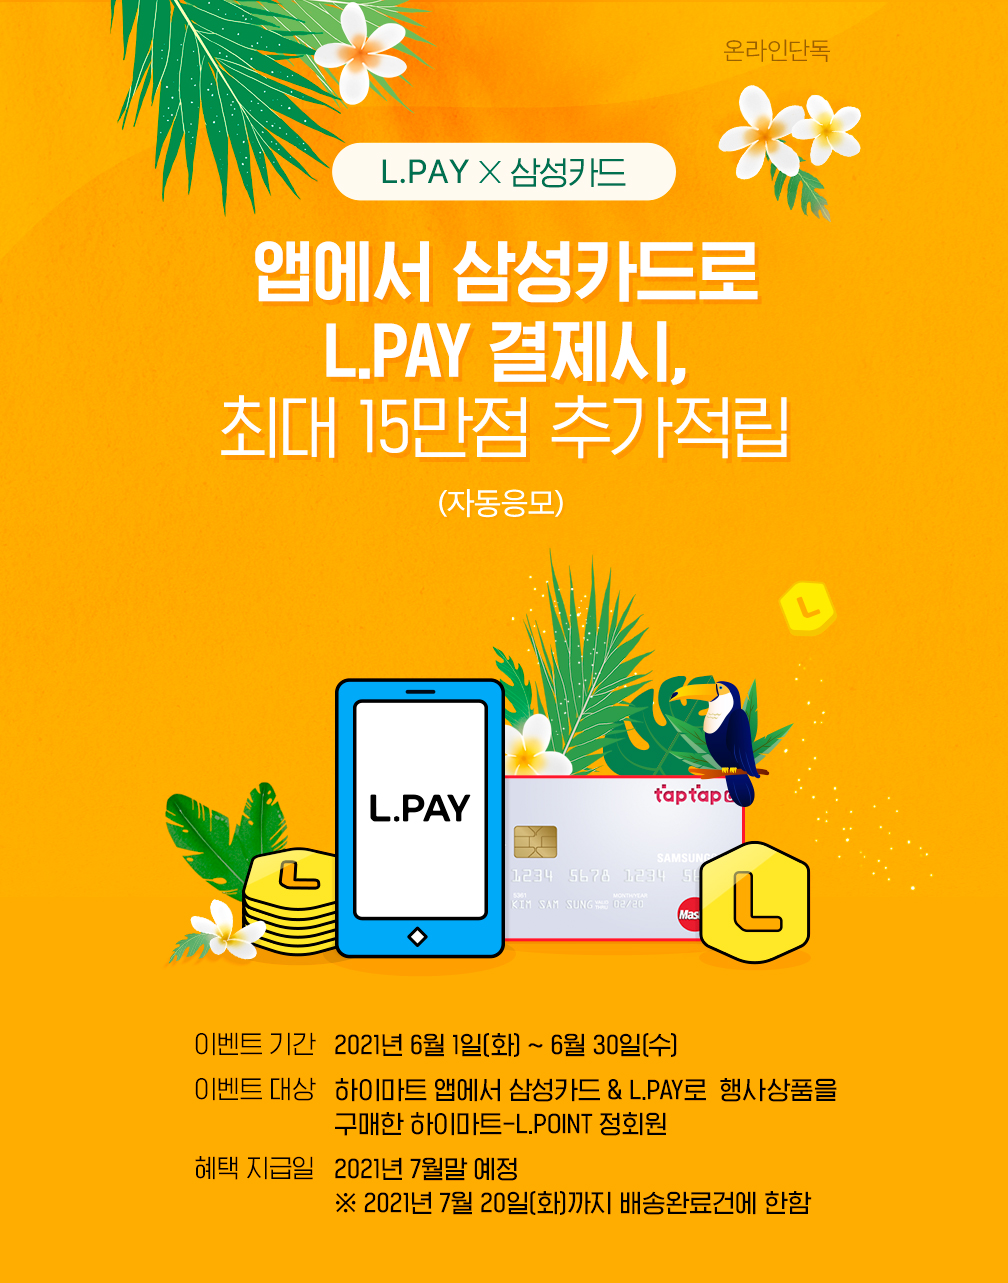 L.PAY X 삼성카드, 앱에서 삼성카드로 L.PAY 결제시, 최대 15만점 추가적립 (자동응모)